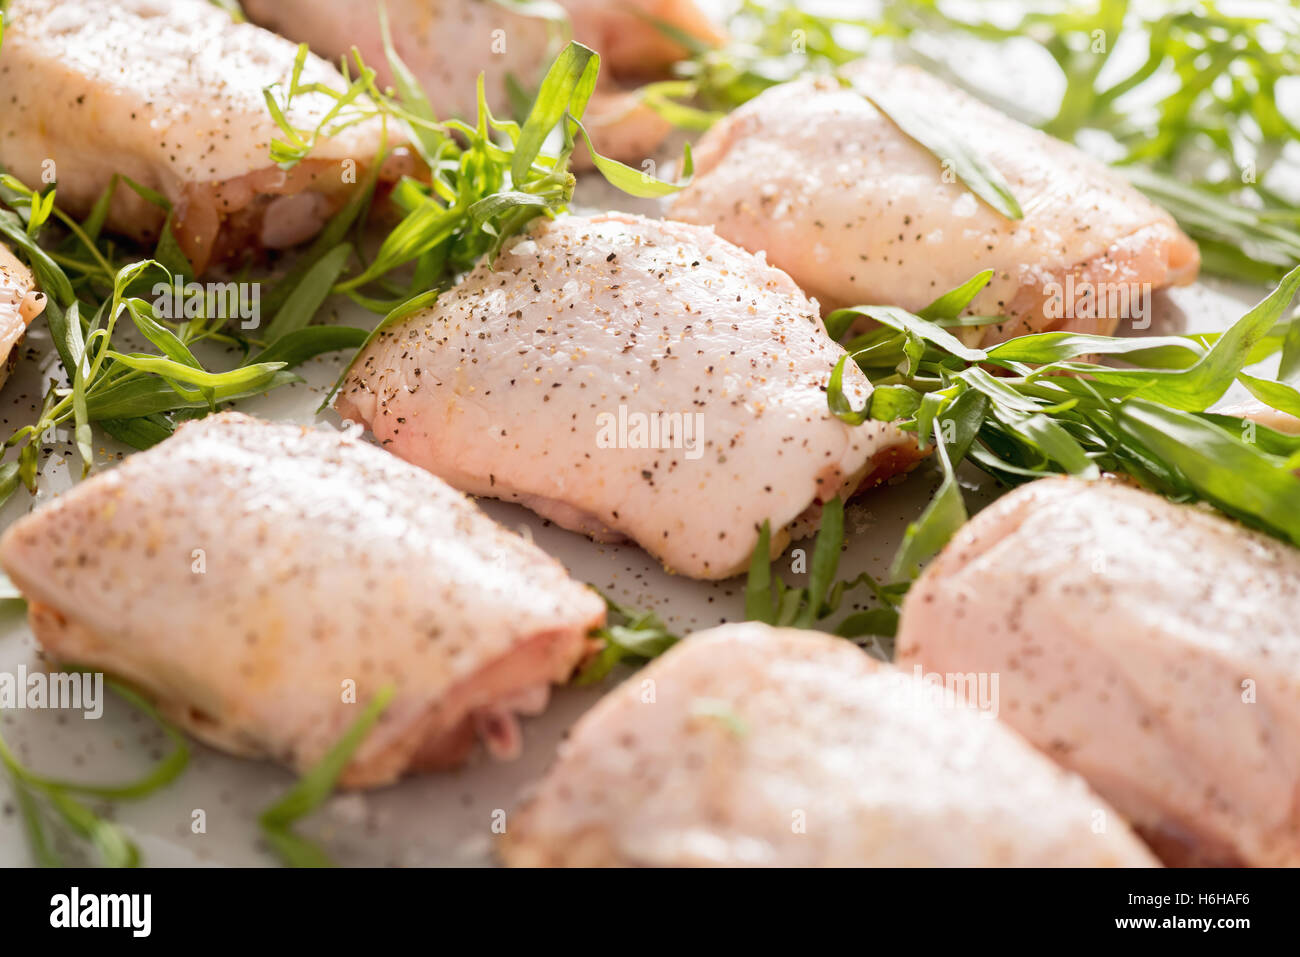 Les cuisses de poulet avec de l'estragon et épices prêts à cuire pour le dîner Banque D'Images